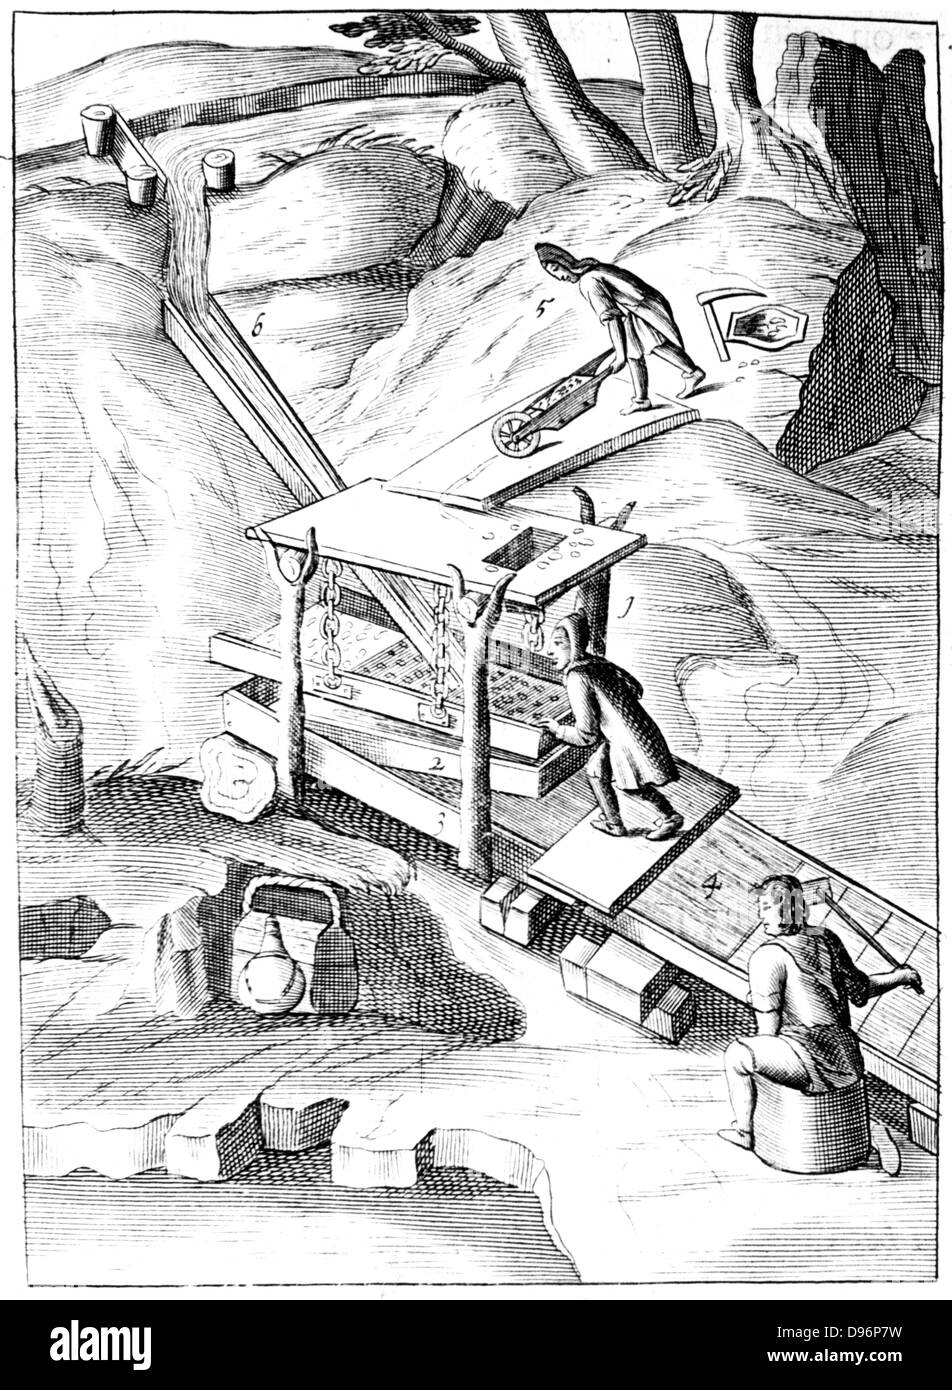 Lave-ore pour extraire l'or. L'eau est injectée dans un tamis contenant du minerai broyé. Solution contenant du minerai dans la suspension est amenée par la collecte des casseroles, souvent bordées de laine sombre. Or, étant le plus lourd, d'ingrédients séparés sur le chemin. À partir de 1683 de l'édition anglaise de 'mineralischen Ertzt allerfurnemisten Beschreibung', Lazarus Ercker, (Prague, 1574). La gravure sur cuivre. Banque D'Images